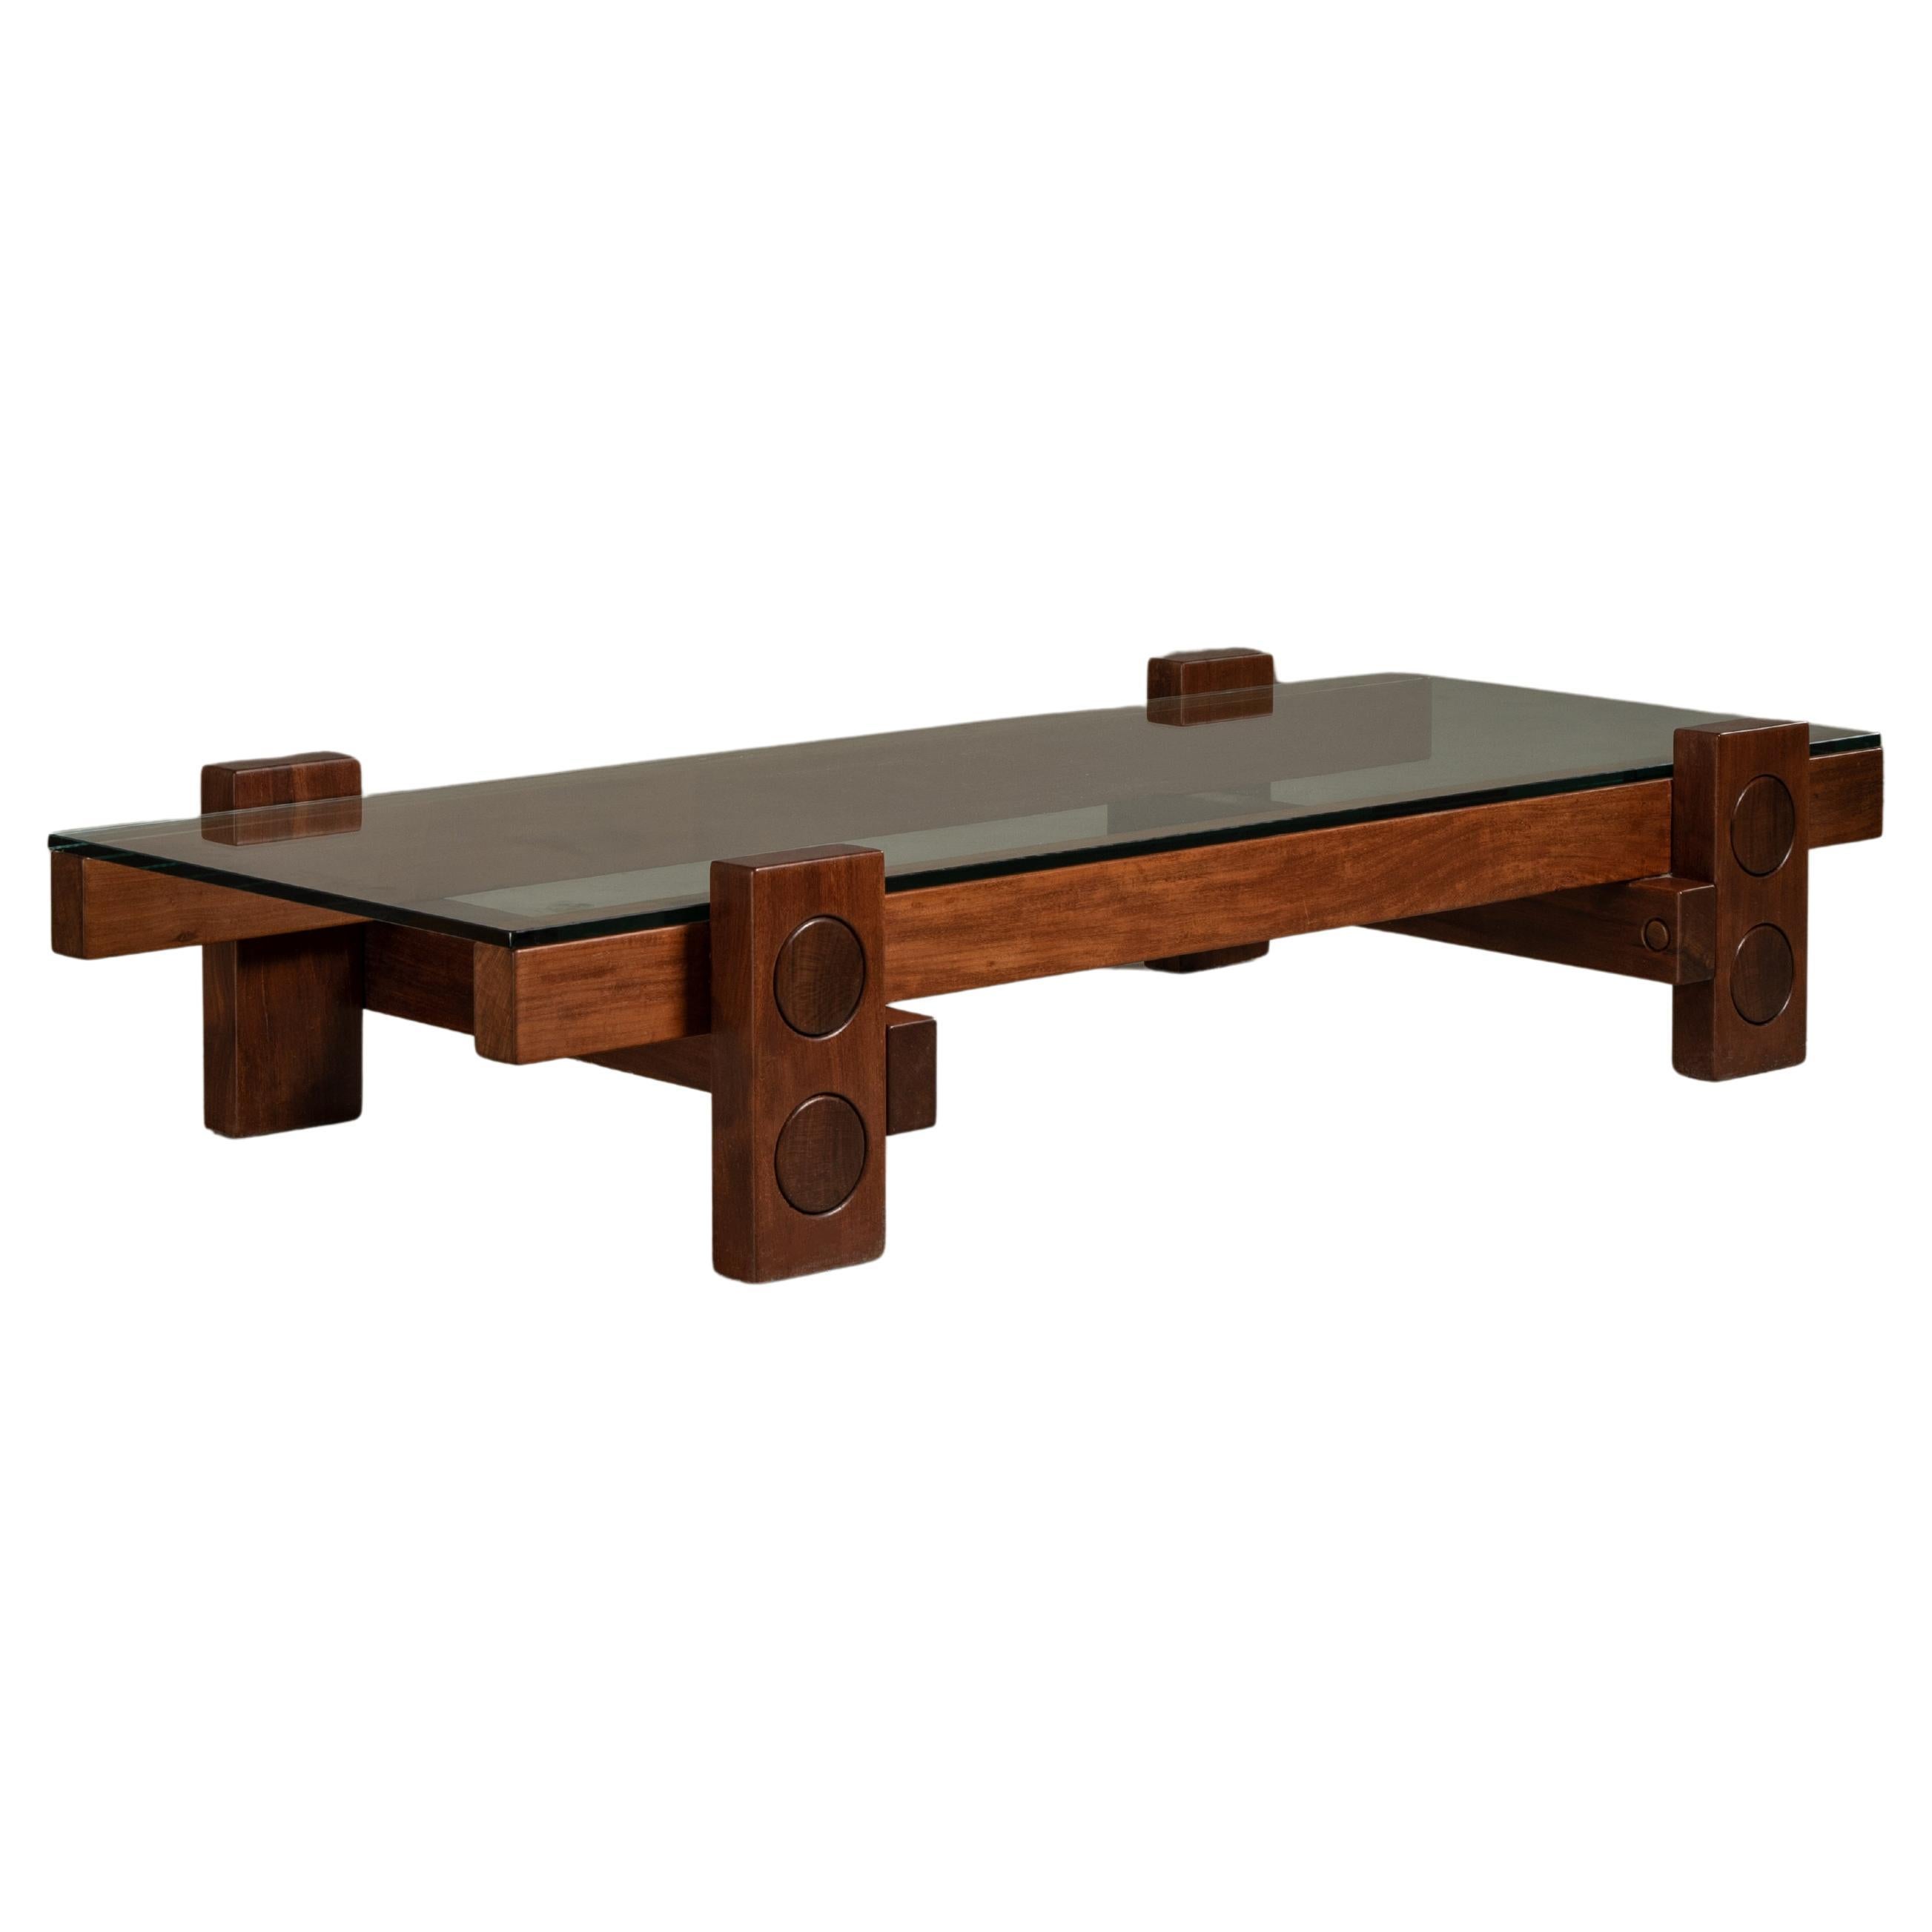 'PC' Center Table in Solid Wood, Zanini de Zanine, Brazilian Contemporary Design For Sale